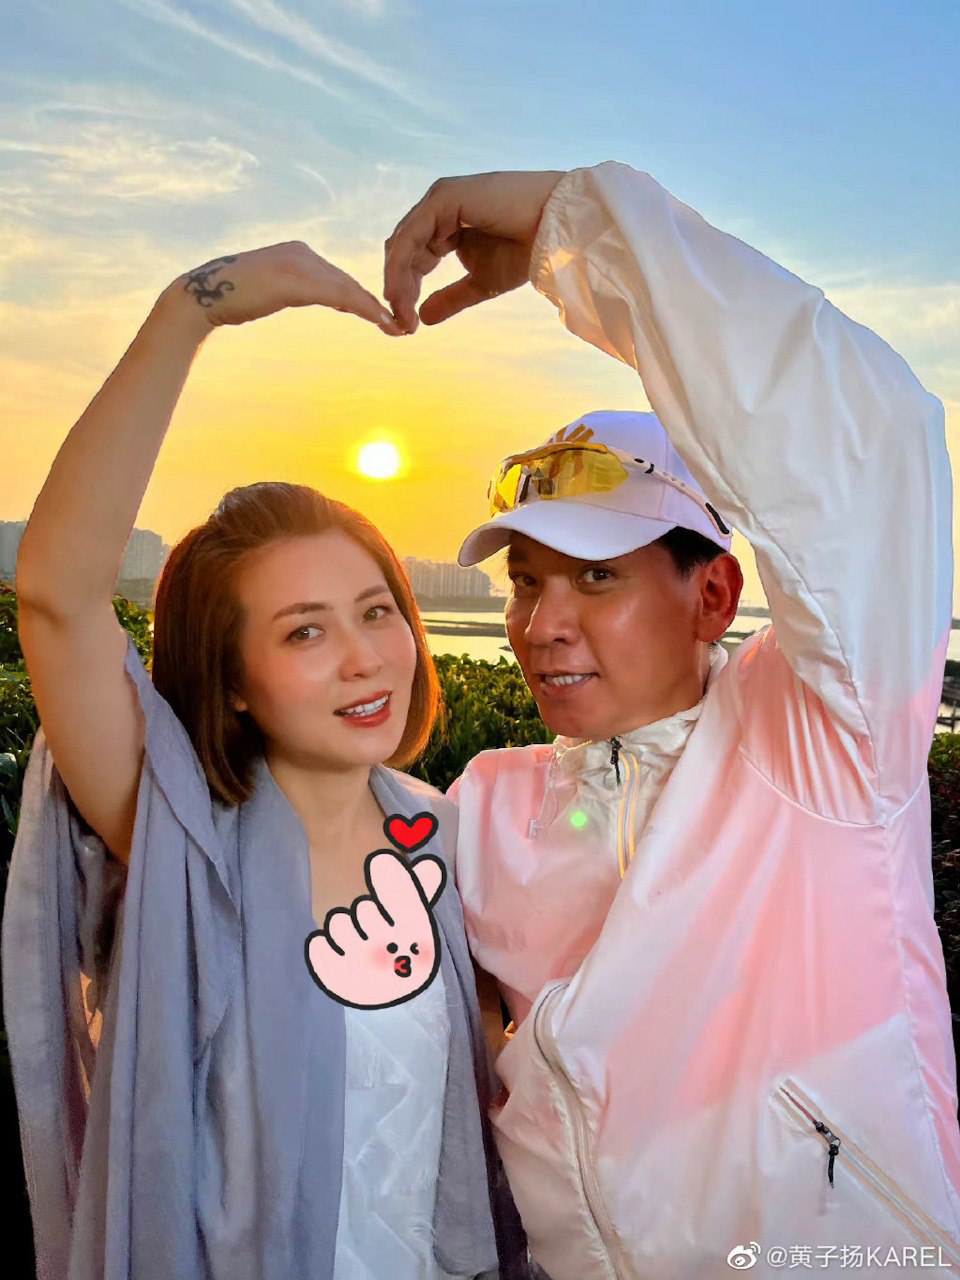 黃子揚在2017年與現任妻子結婚。